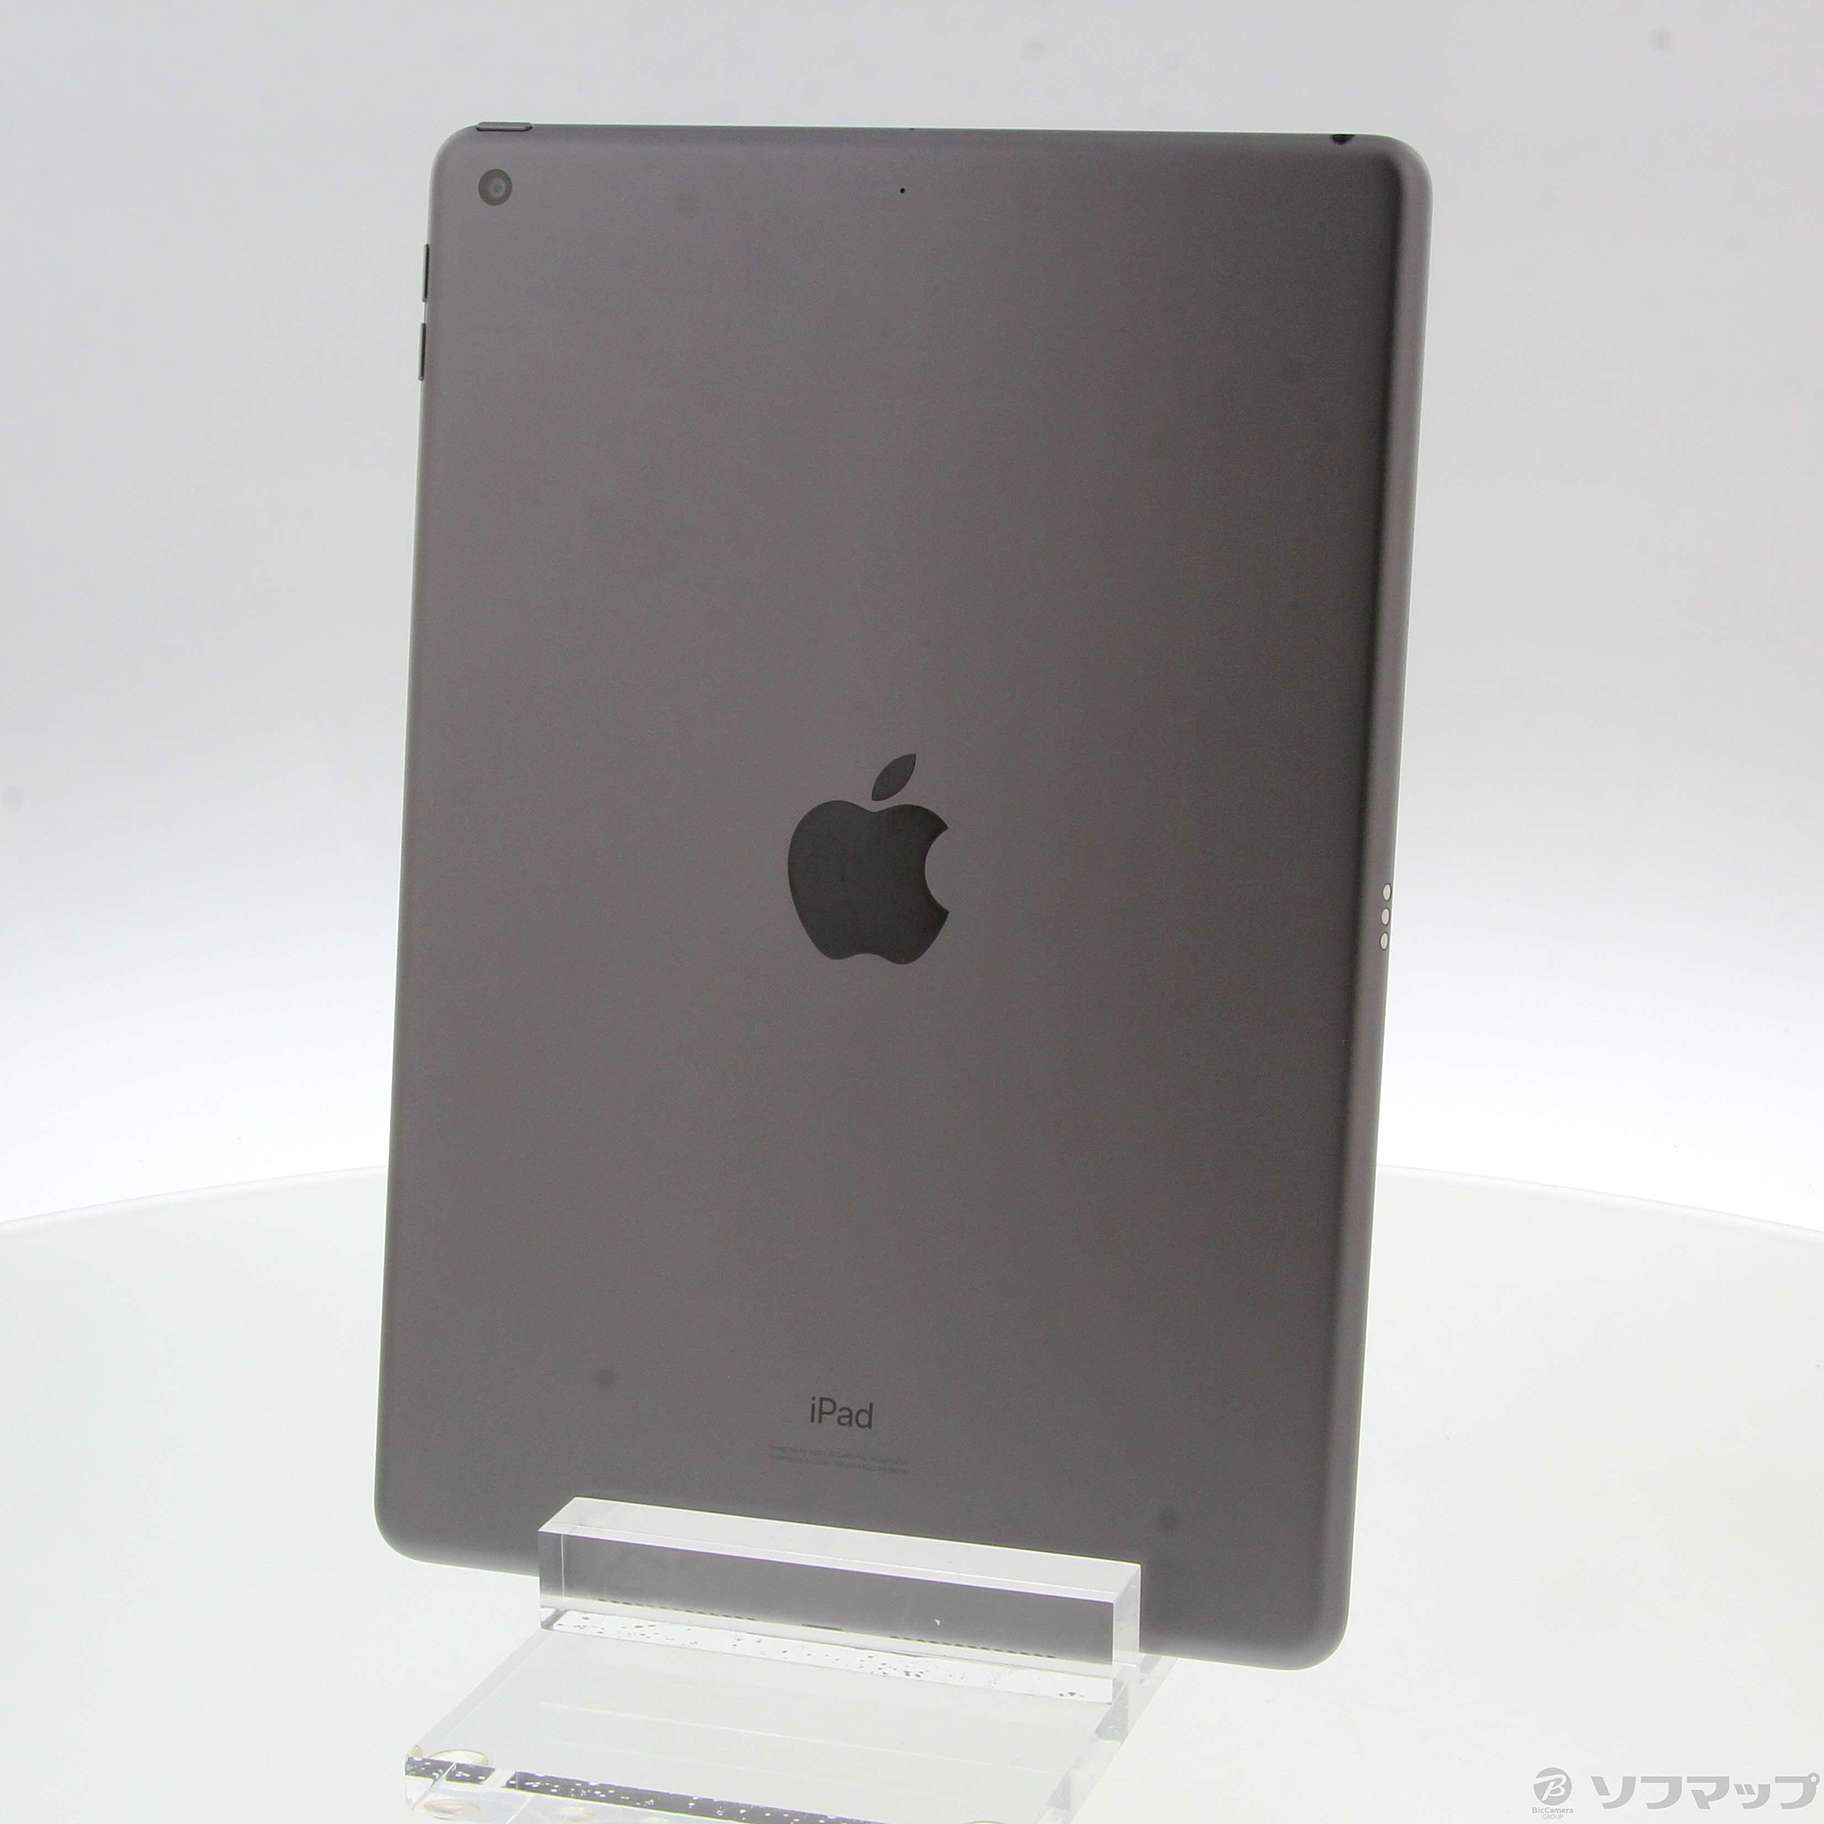 (中古)Apple iPad 第7世代 32GB スペースグレイ MW742LL/A Wi-Fi(269-ud)